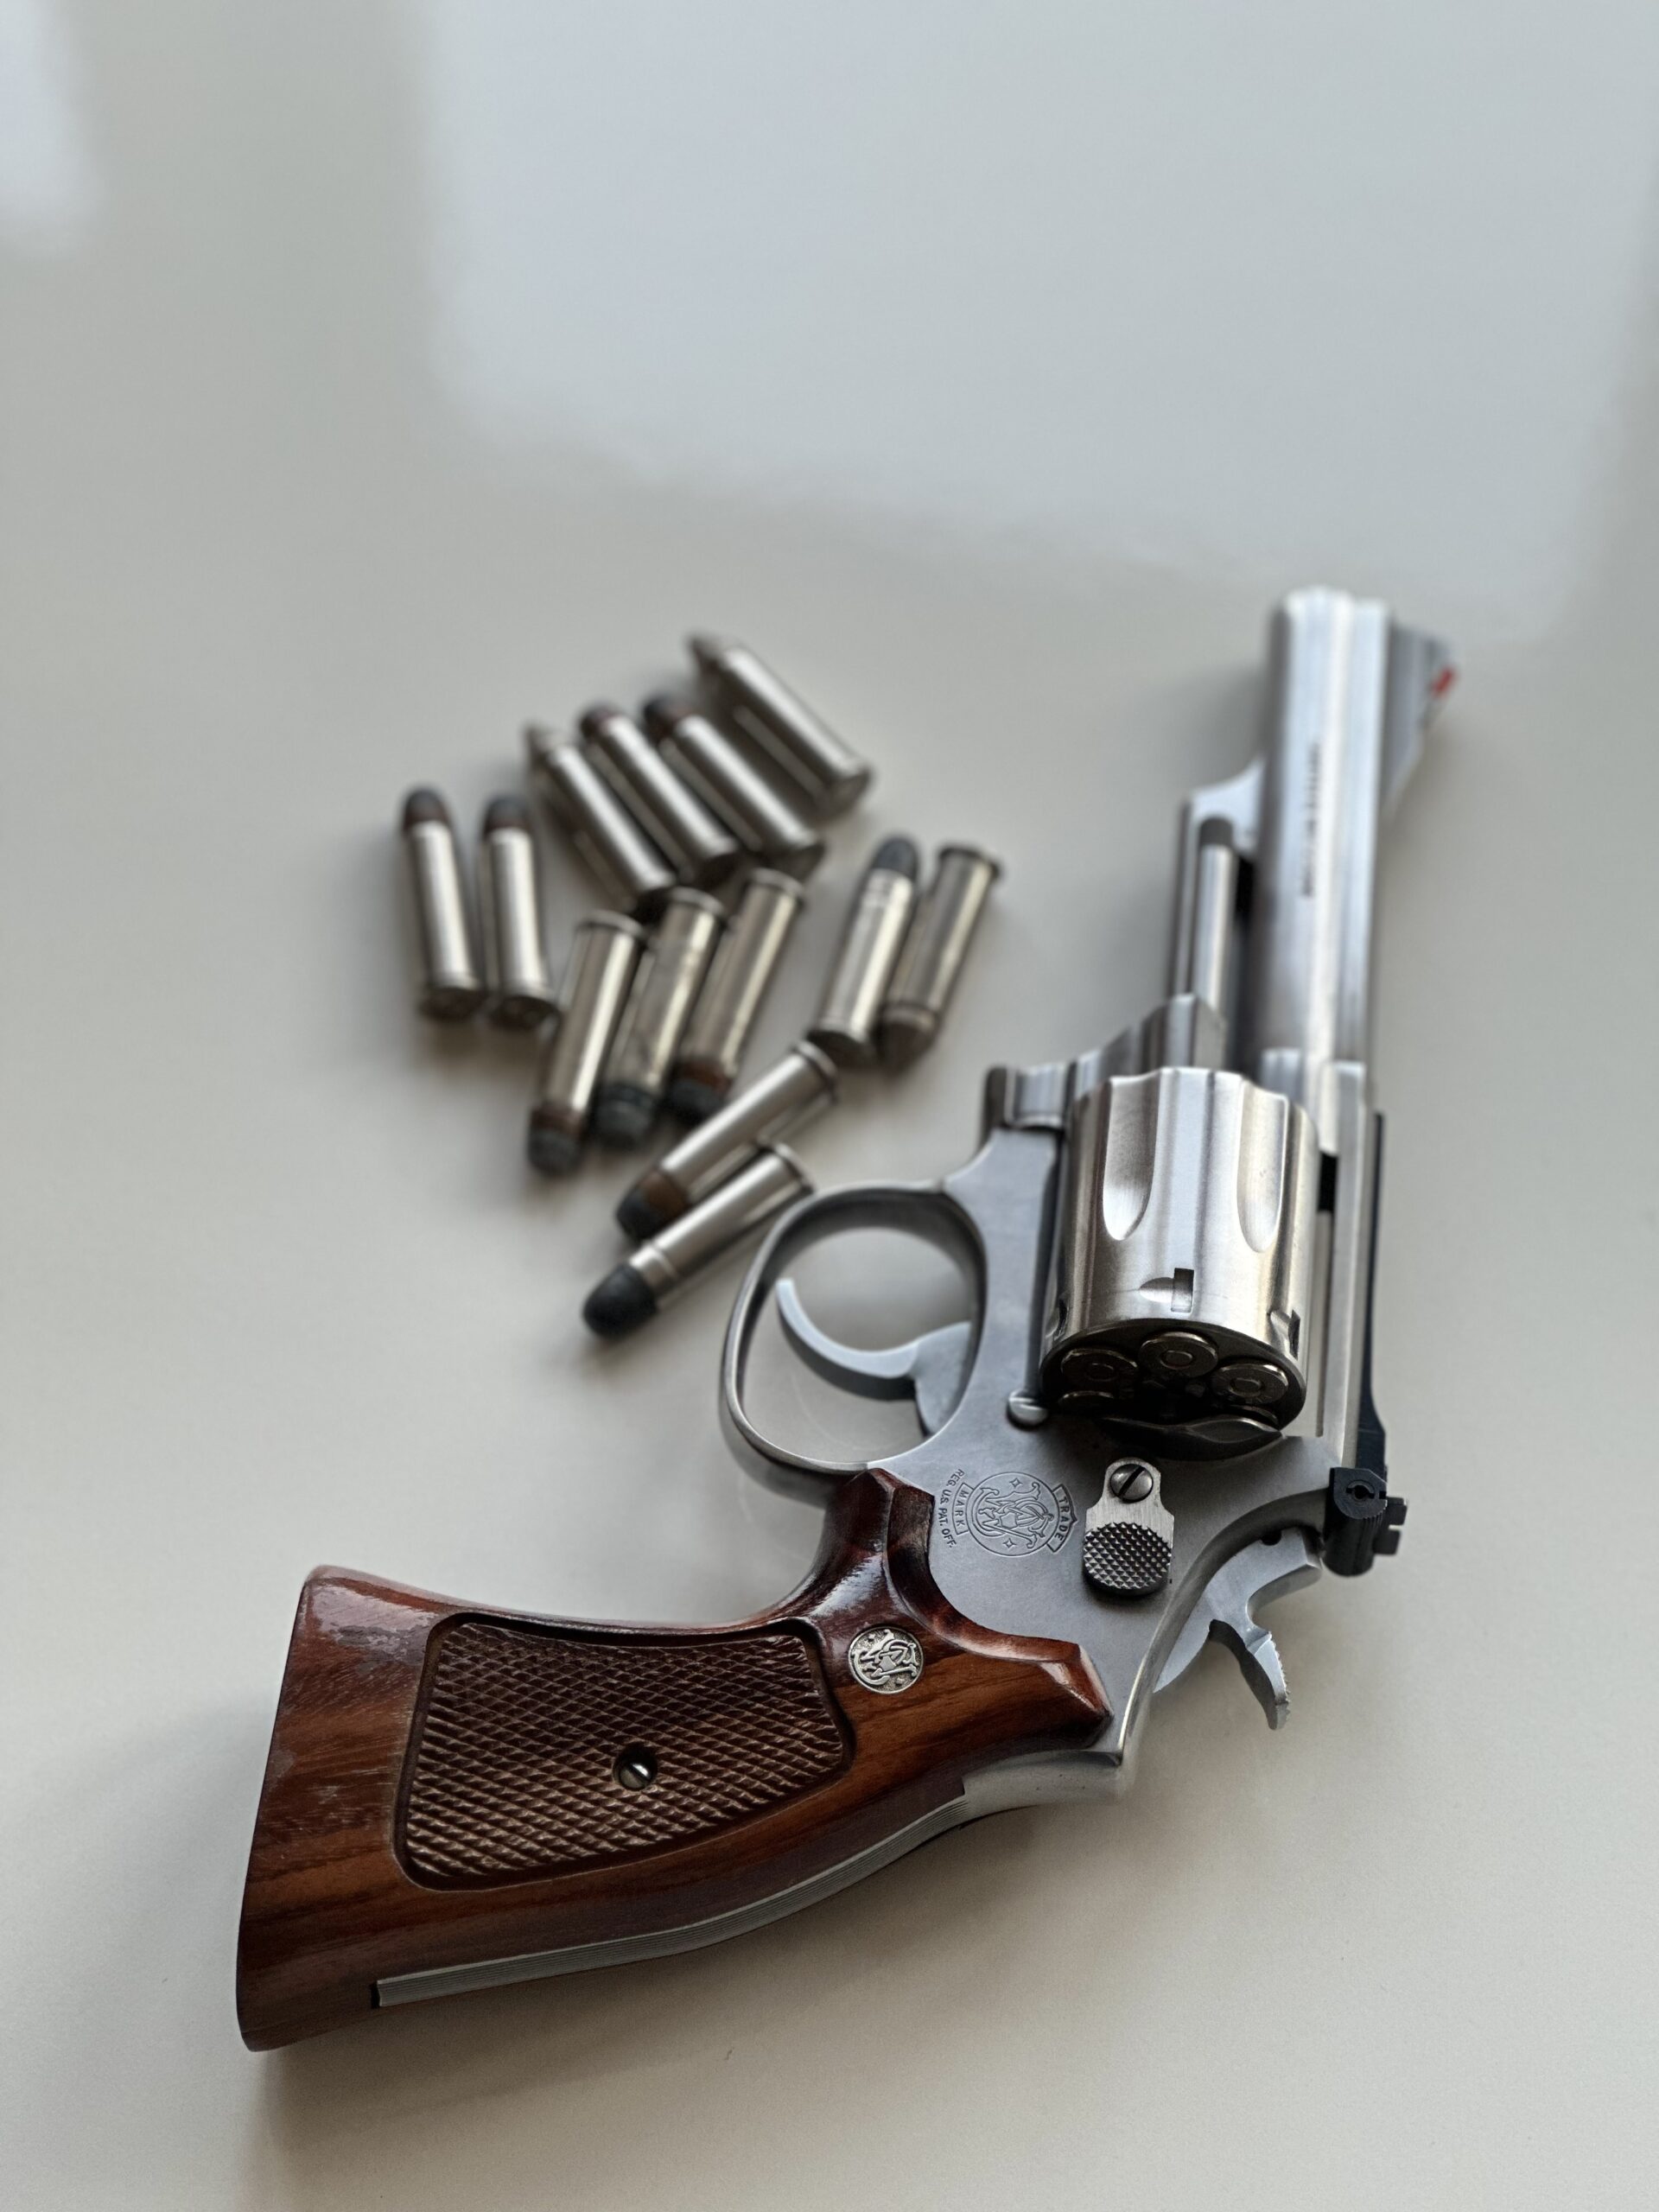 Smith Wesson 3.57 magnum 4inç